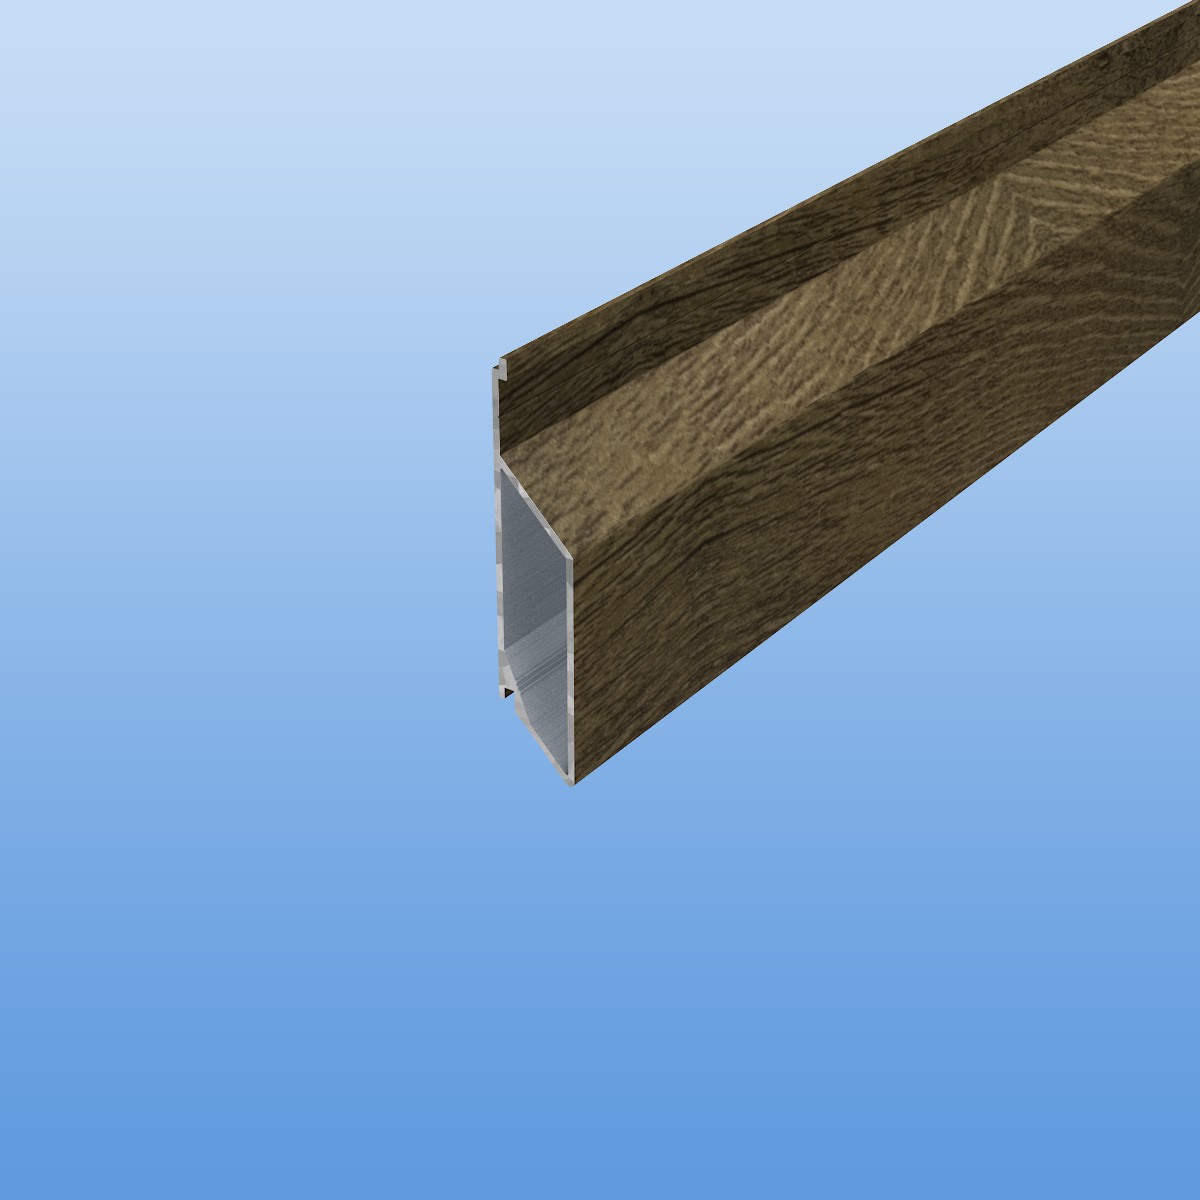 Rhombusprofil aus Aluminium 16mm mit Montagesteg in Holzoptik - Treibholz- Sichtfläche 45mm